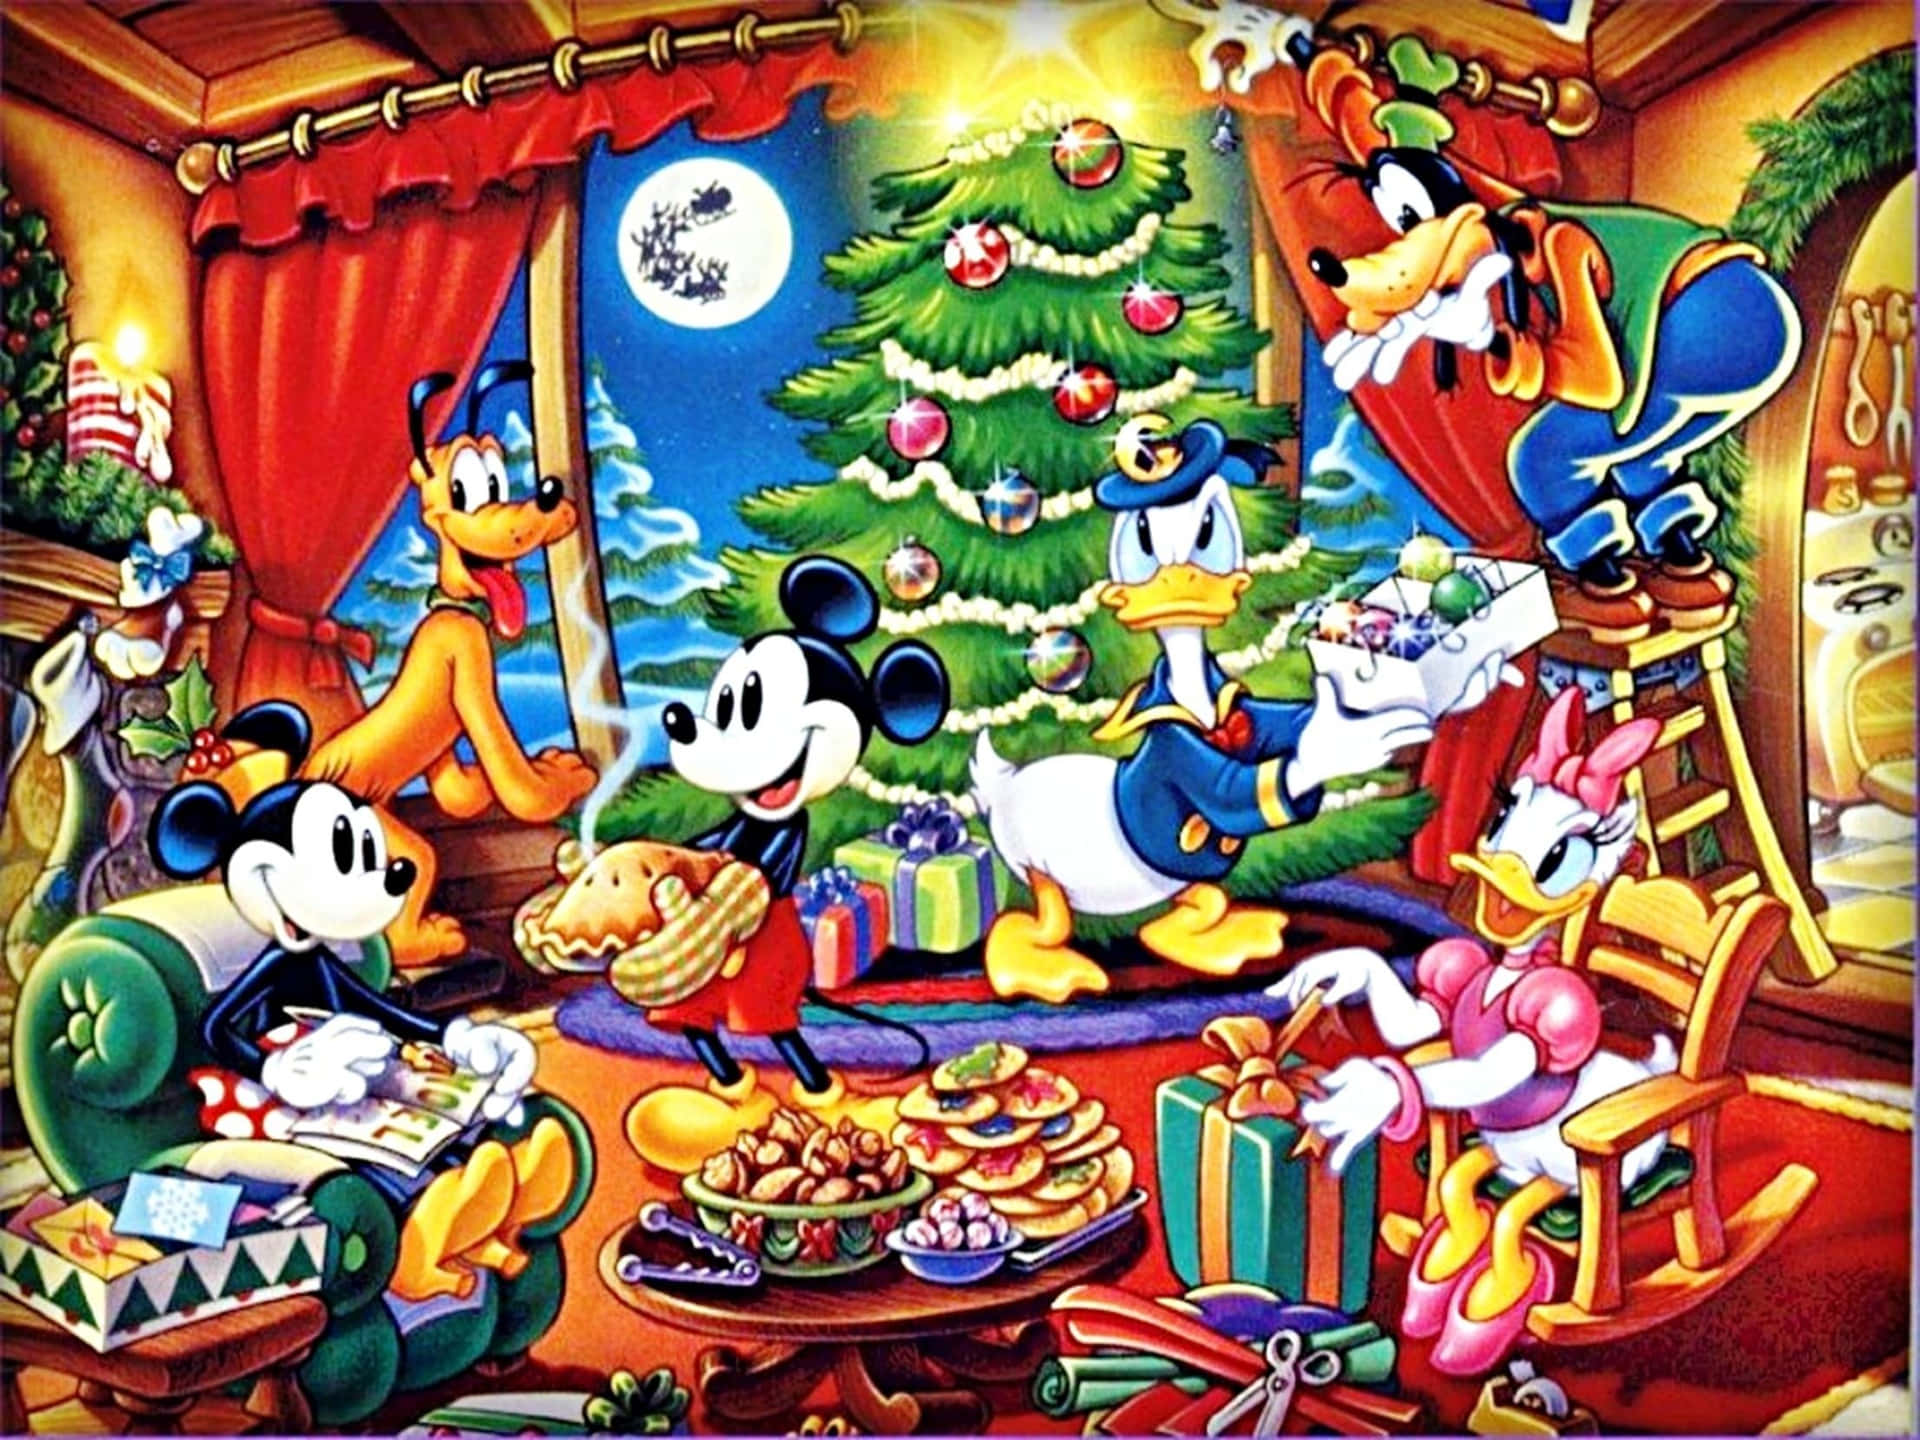 Feiernsie Weihnachten Mit Einem Disney-themed Ipad. Wallpaper